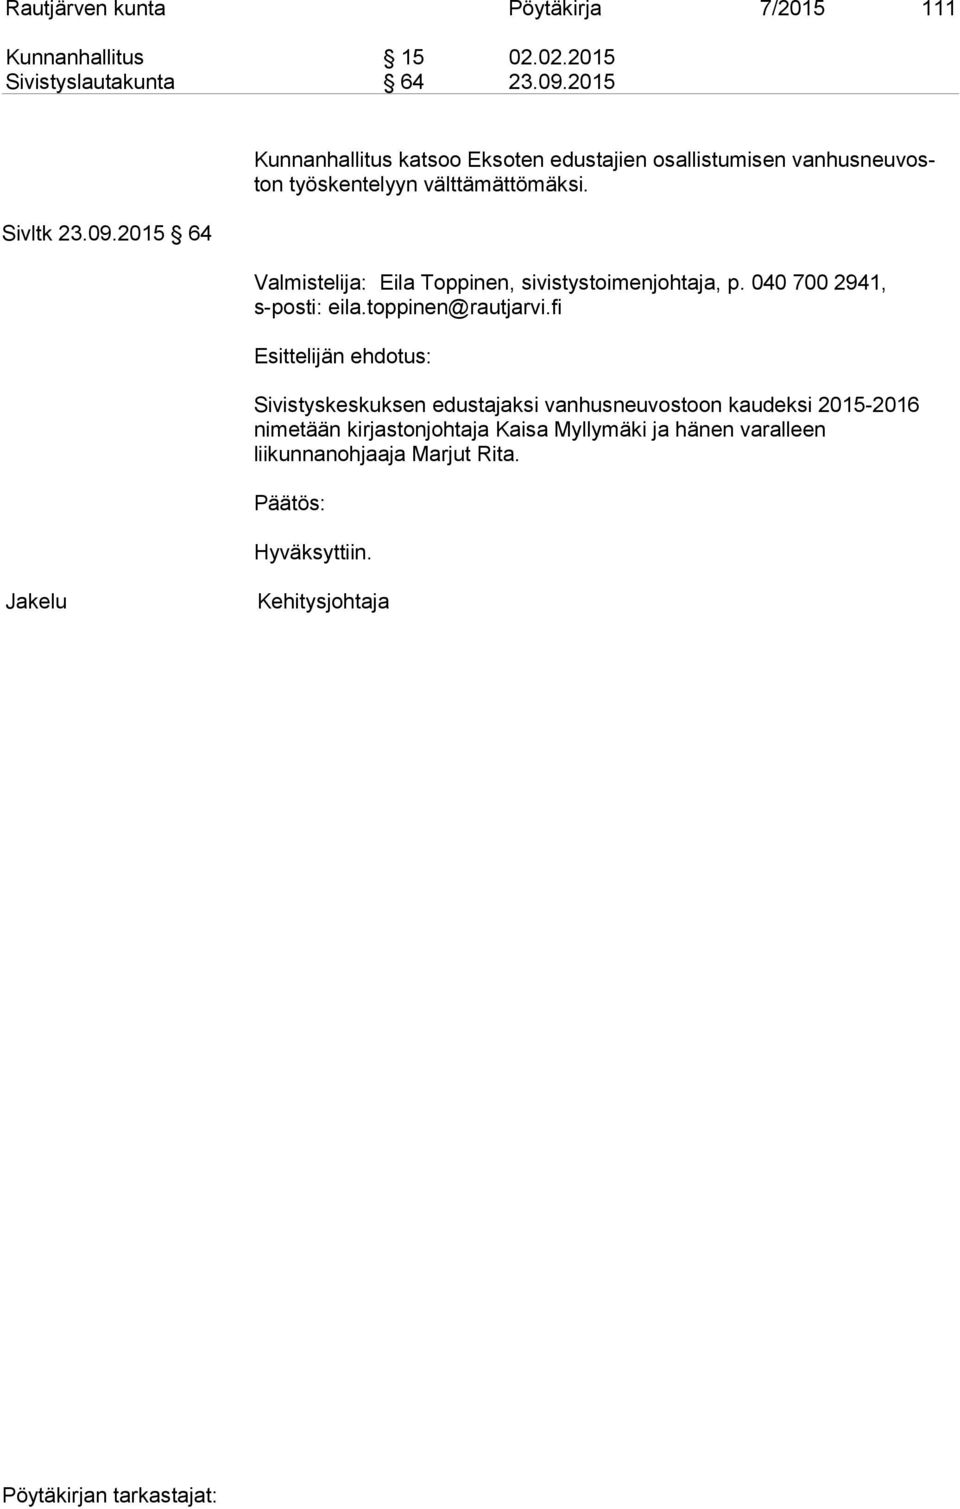 Valmistelija: Eila Toppinen, sivistystoimenjohtaja, p. 040 700 2941, s-posti: eila.toppinen@rautjarvi.